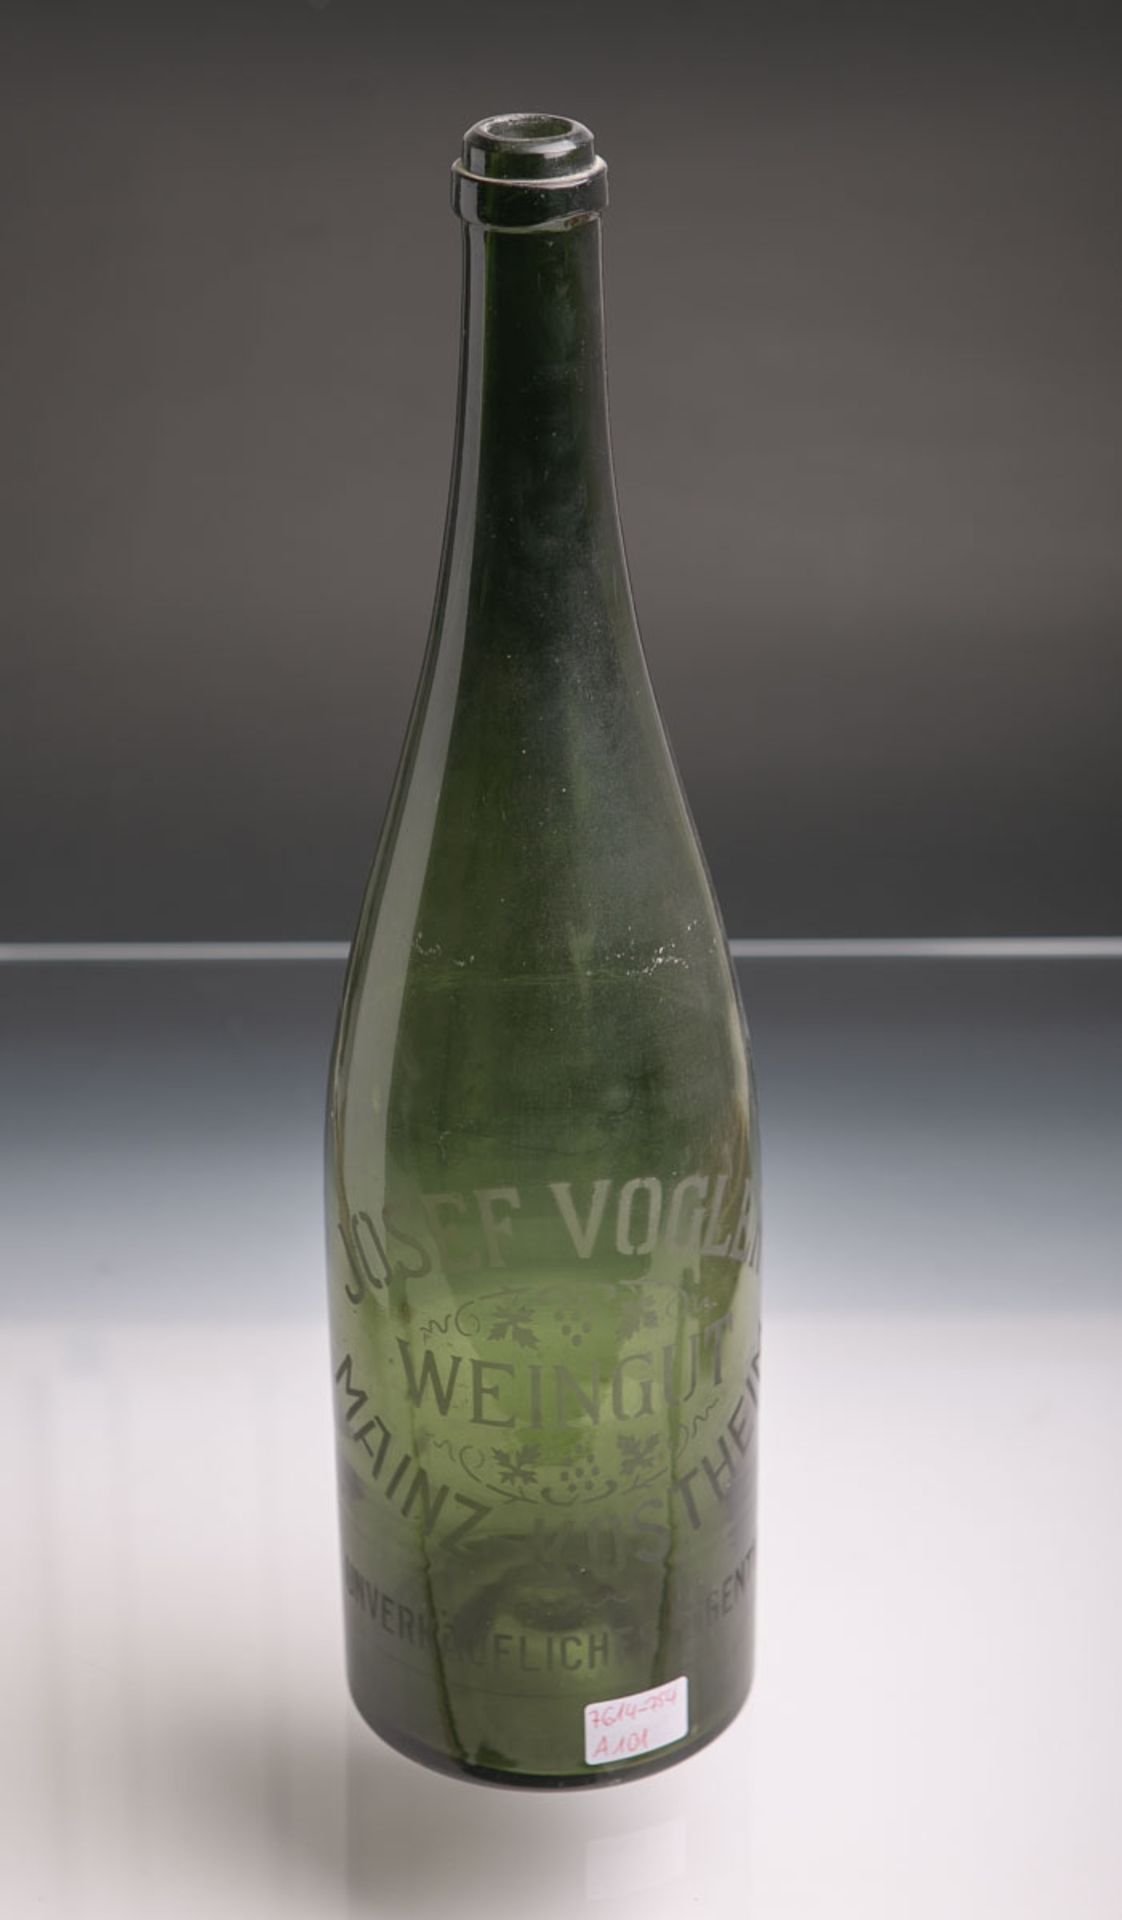 Historische Weinflasche (wohl 18./19. Jh.), waldgrünes Glas mundgeblasen, hochgestochener Boden,